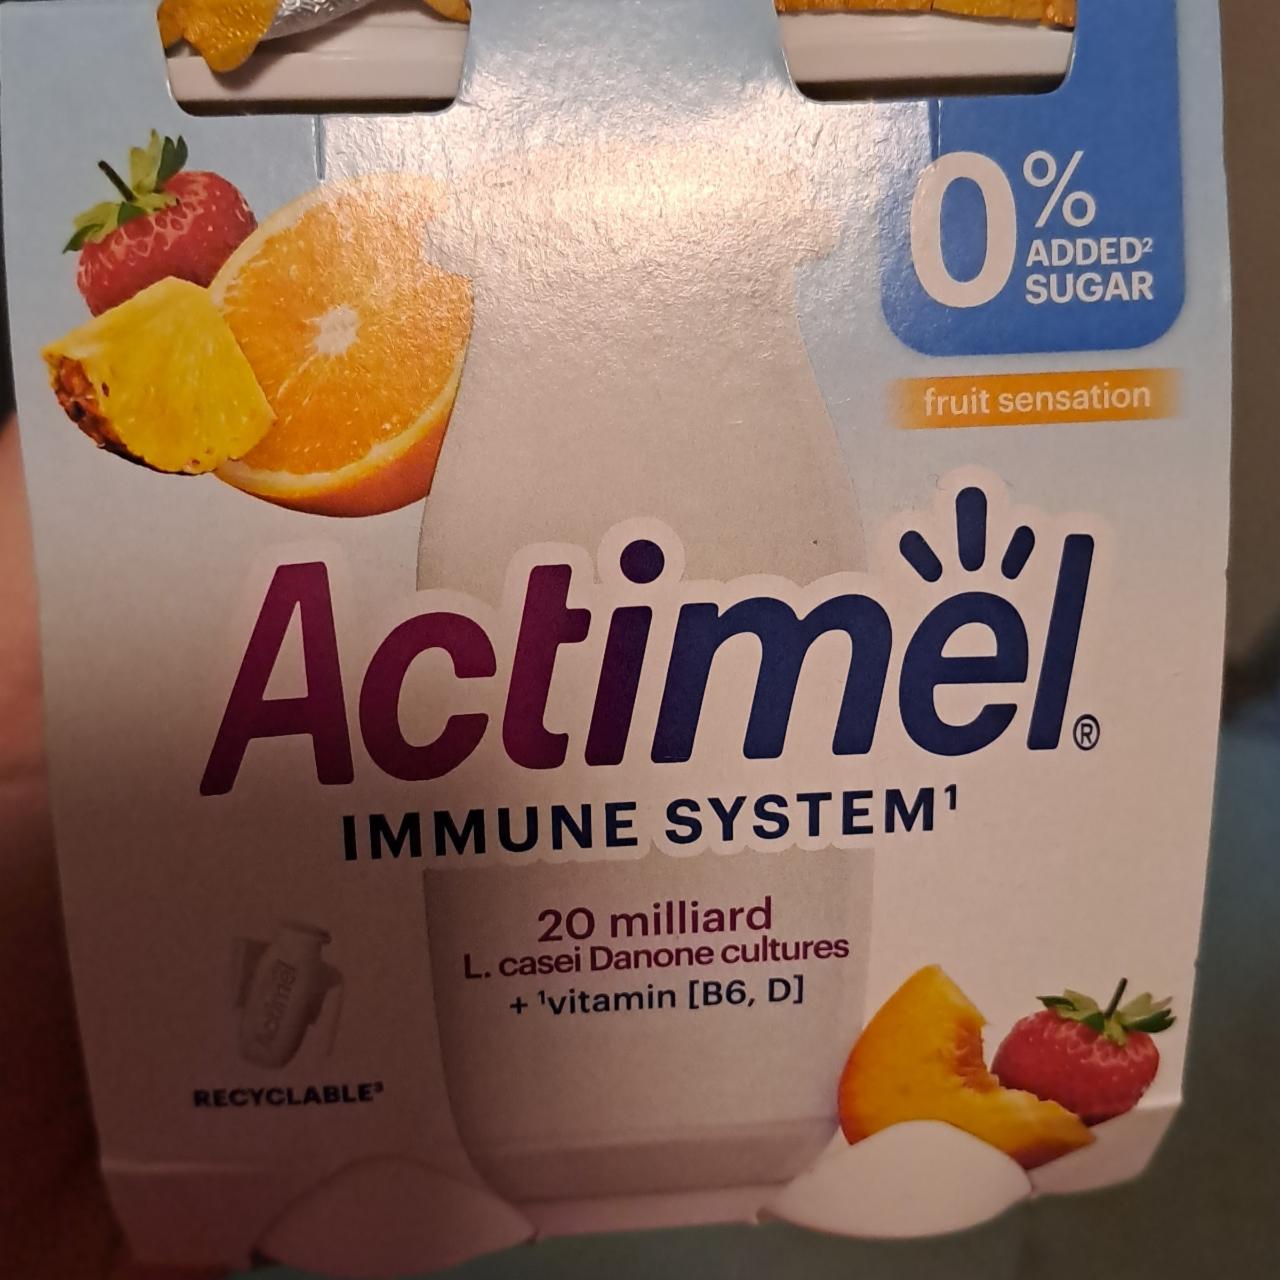 Fotografie - Immune system 0% added sugar fruit sensation Actimel